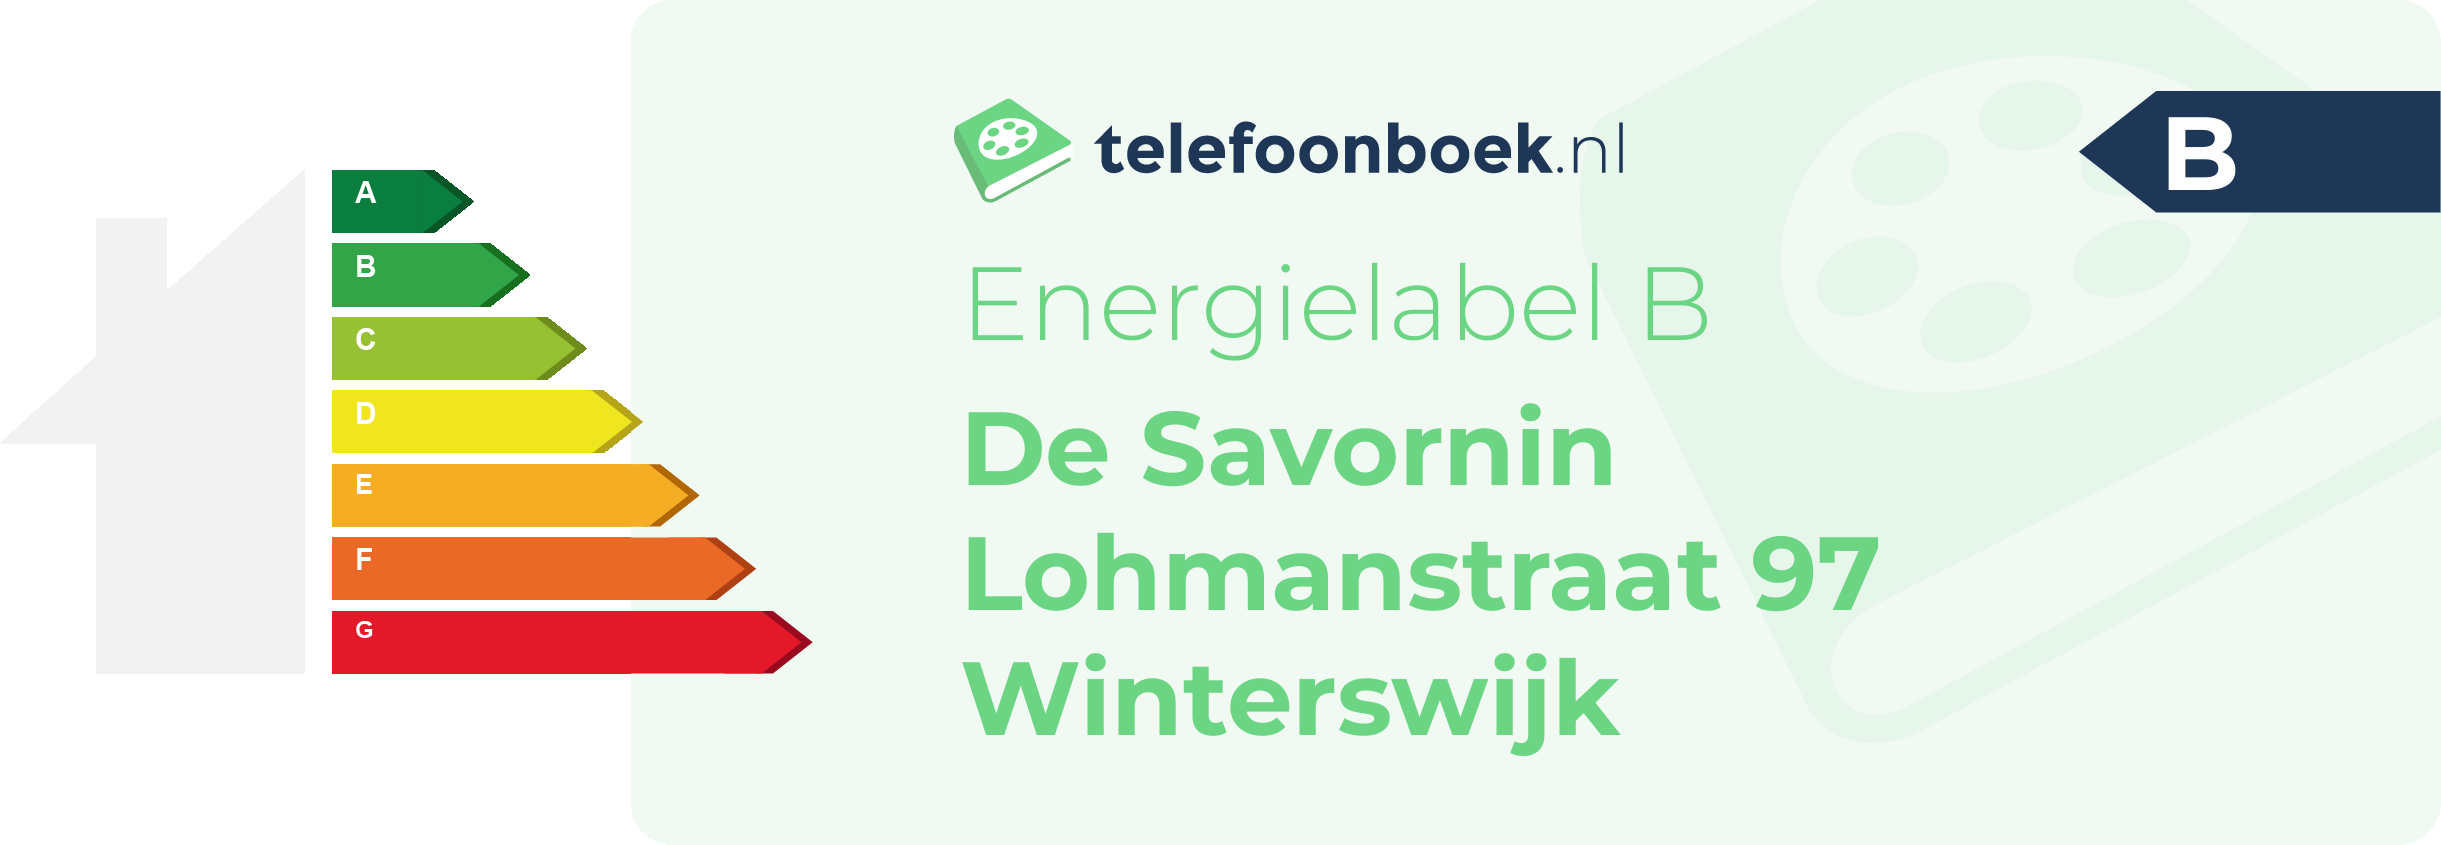 Energielabel De Savornin Lohmanstraat 97 Winterswijk